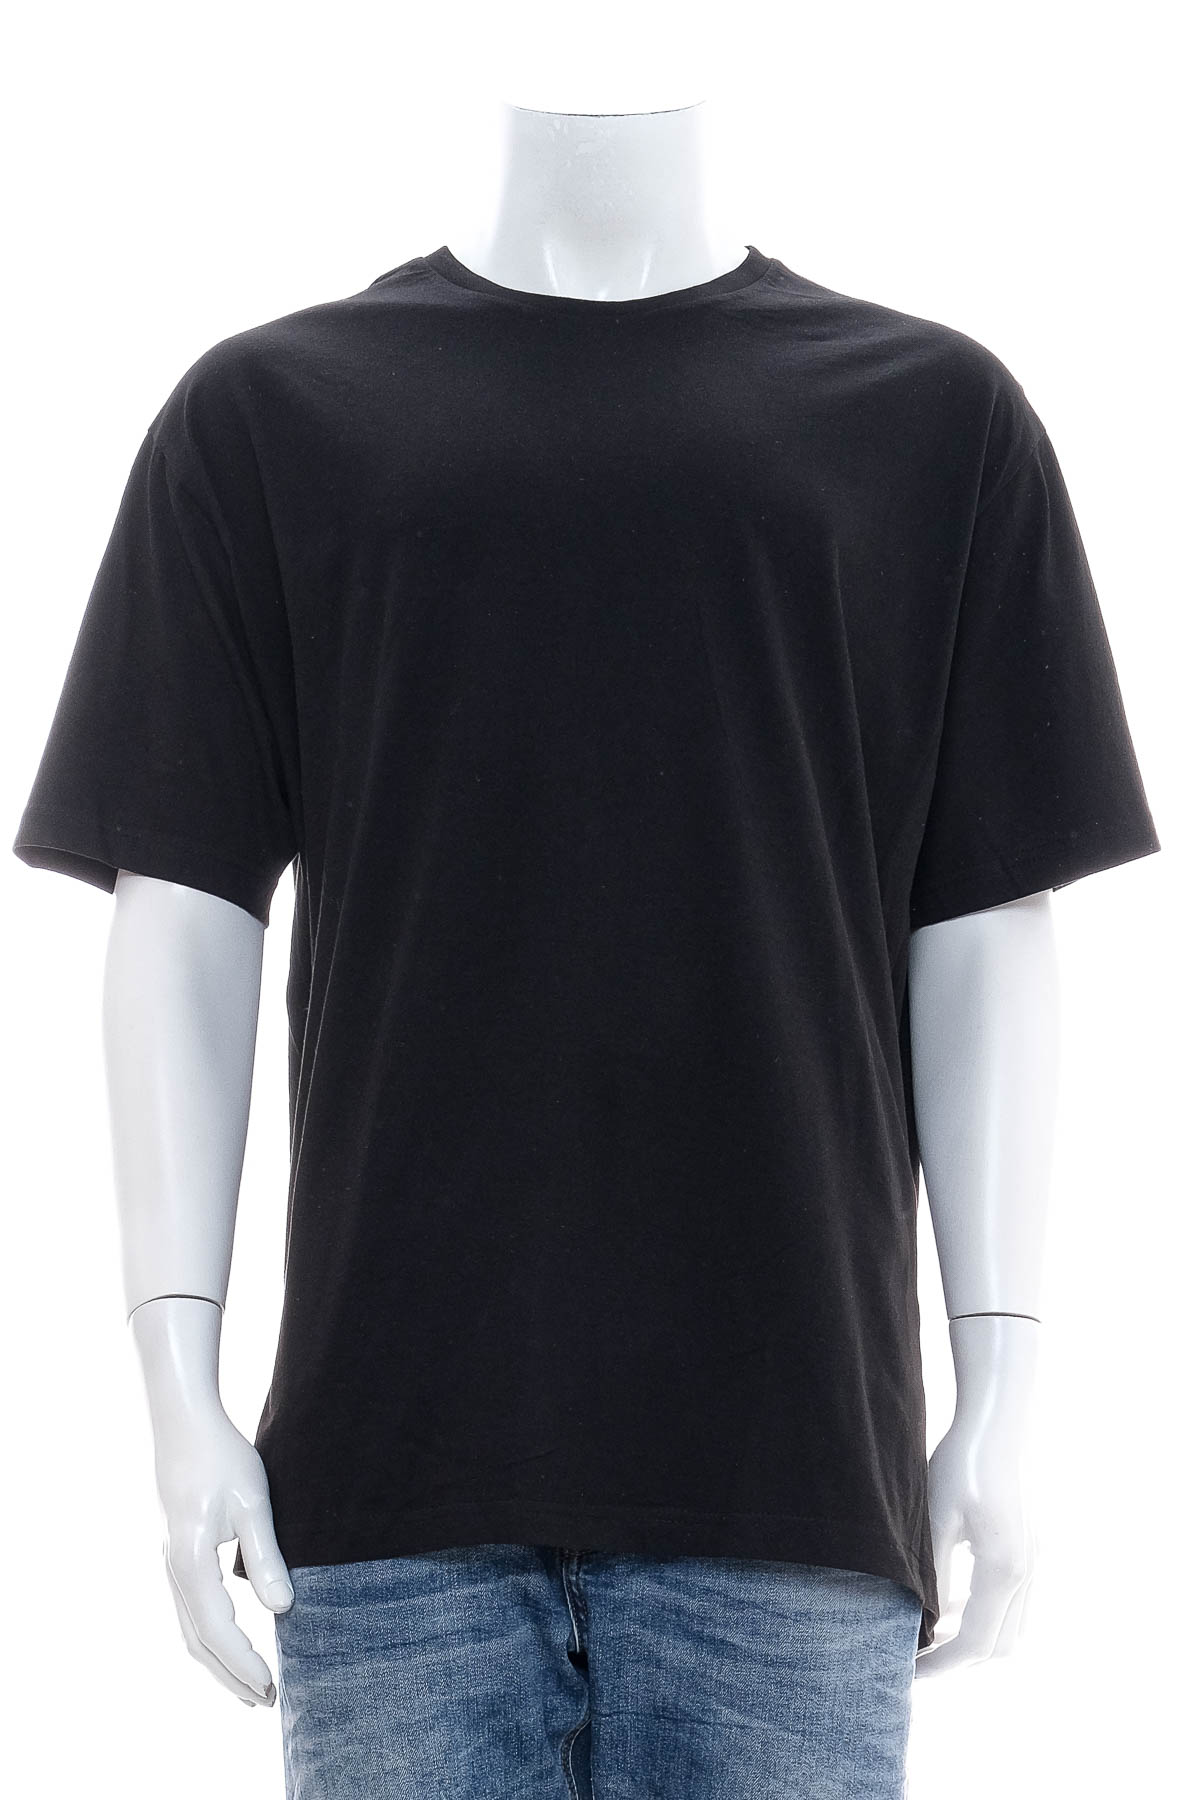 Αντρική μπλούζα - Otto Kern - 0